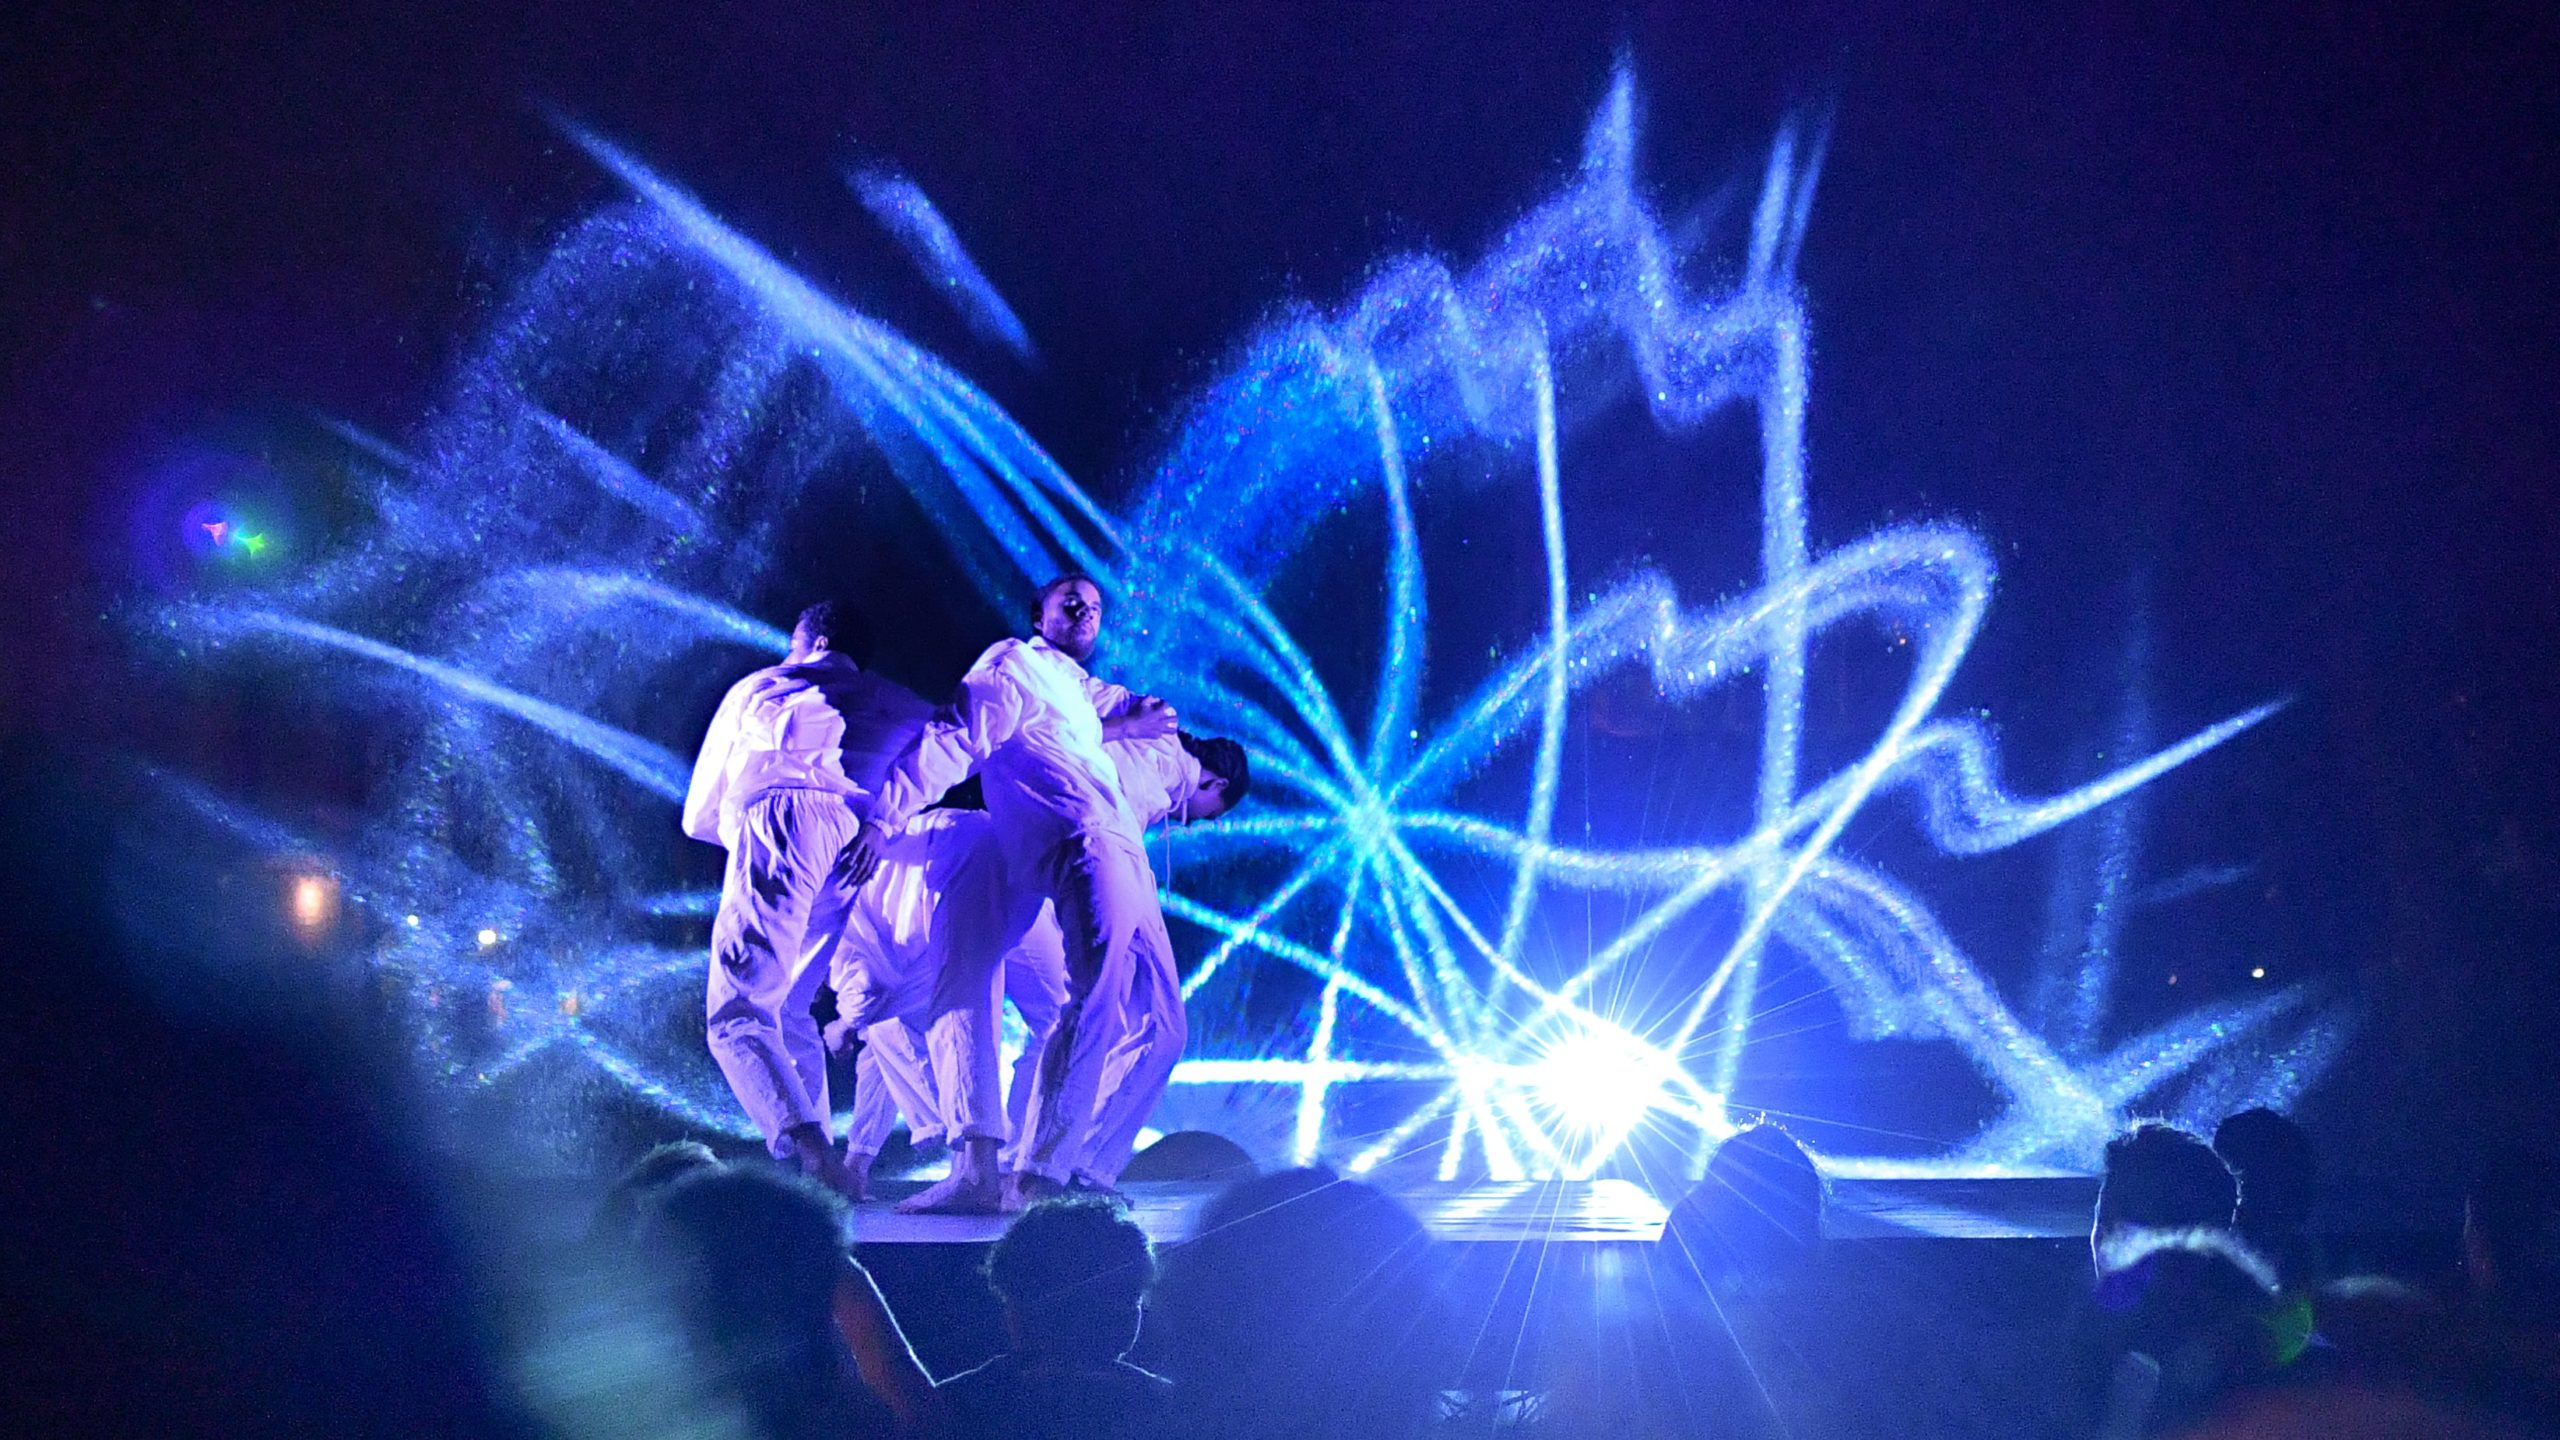 creations originales performances plurdisciplinaires bordeaux - musique elctronique, danse, projections visuelles